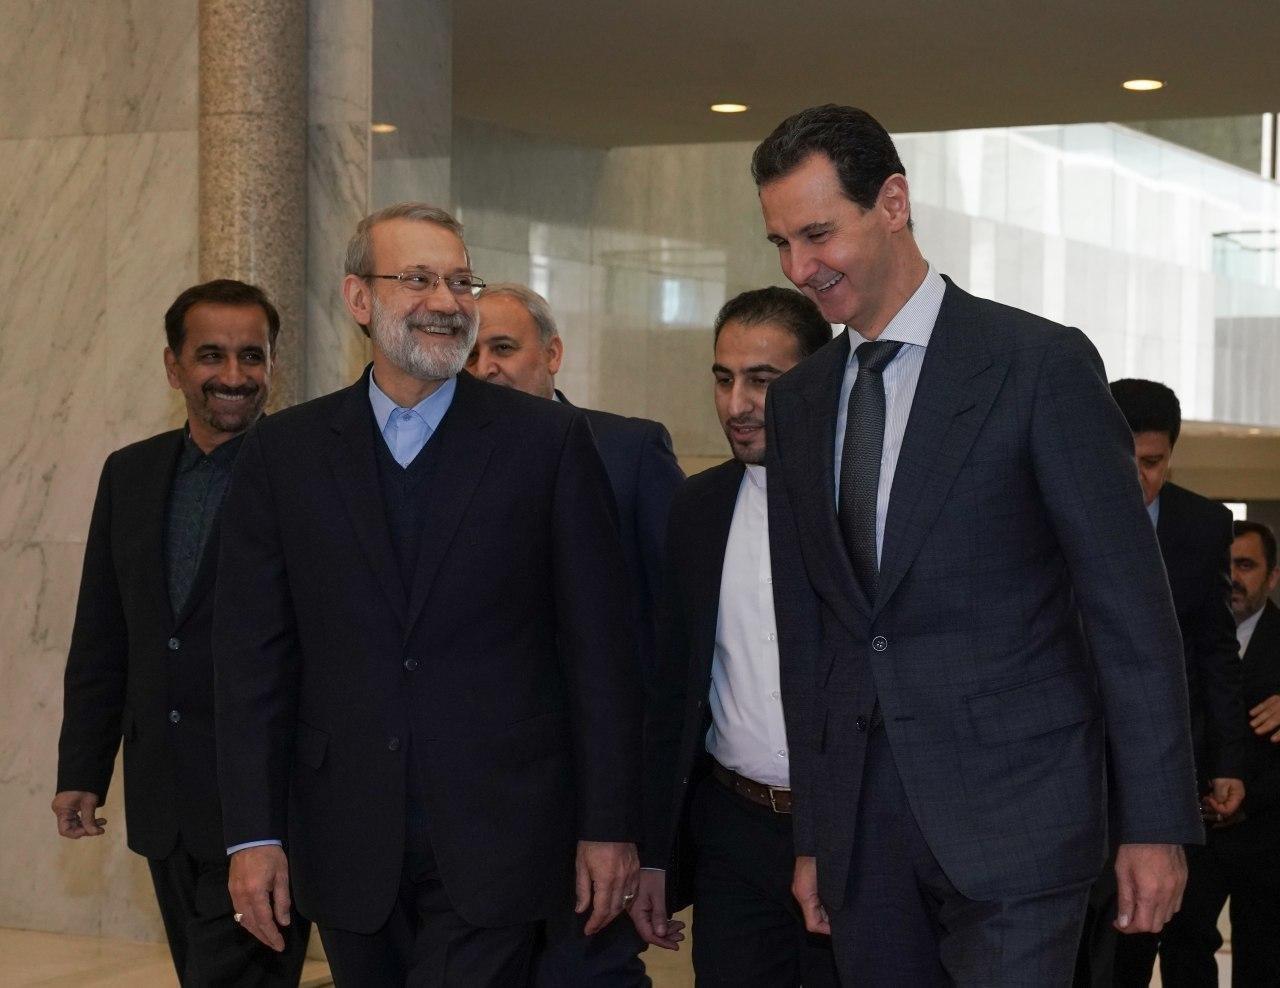 بشار اسد در دیدار لاریجانی : ملت سوریه مصمم به پاکسازی کامل کشورشان از لوث تروریسم هستند